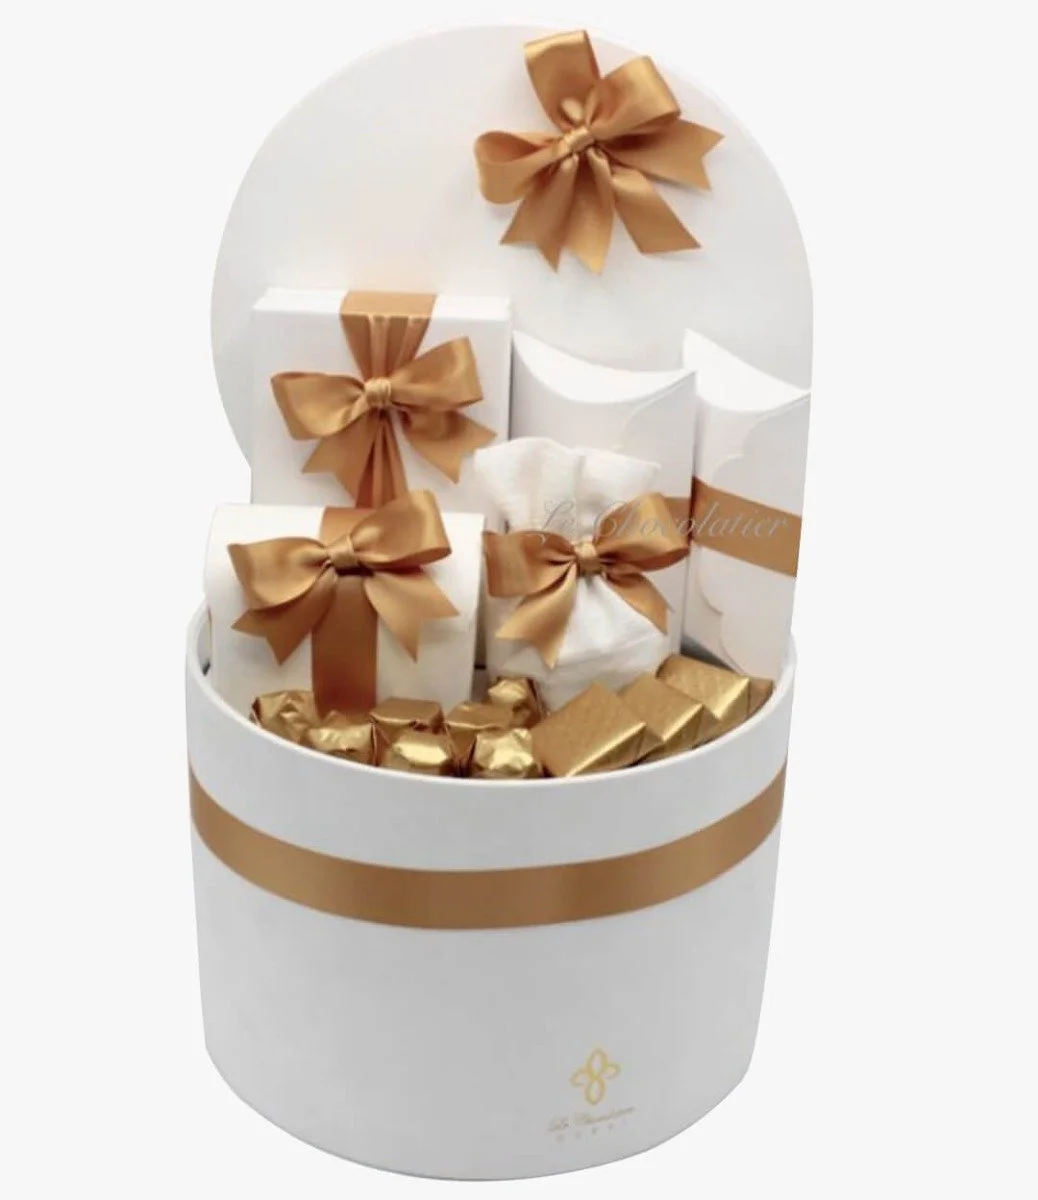 Luxury Chocolate & Sweets Velvet Box Hamper By Le Chocolatier